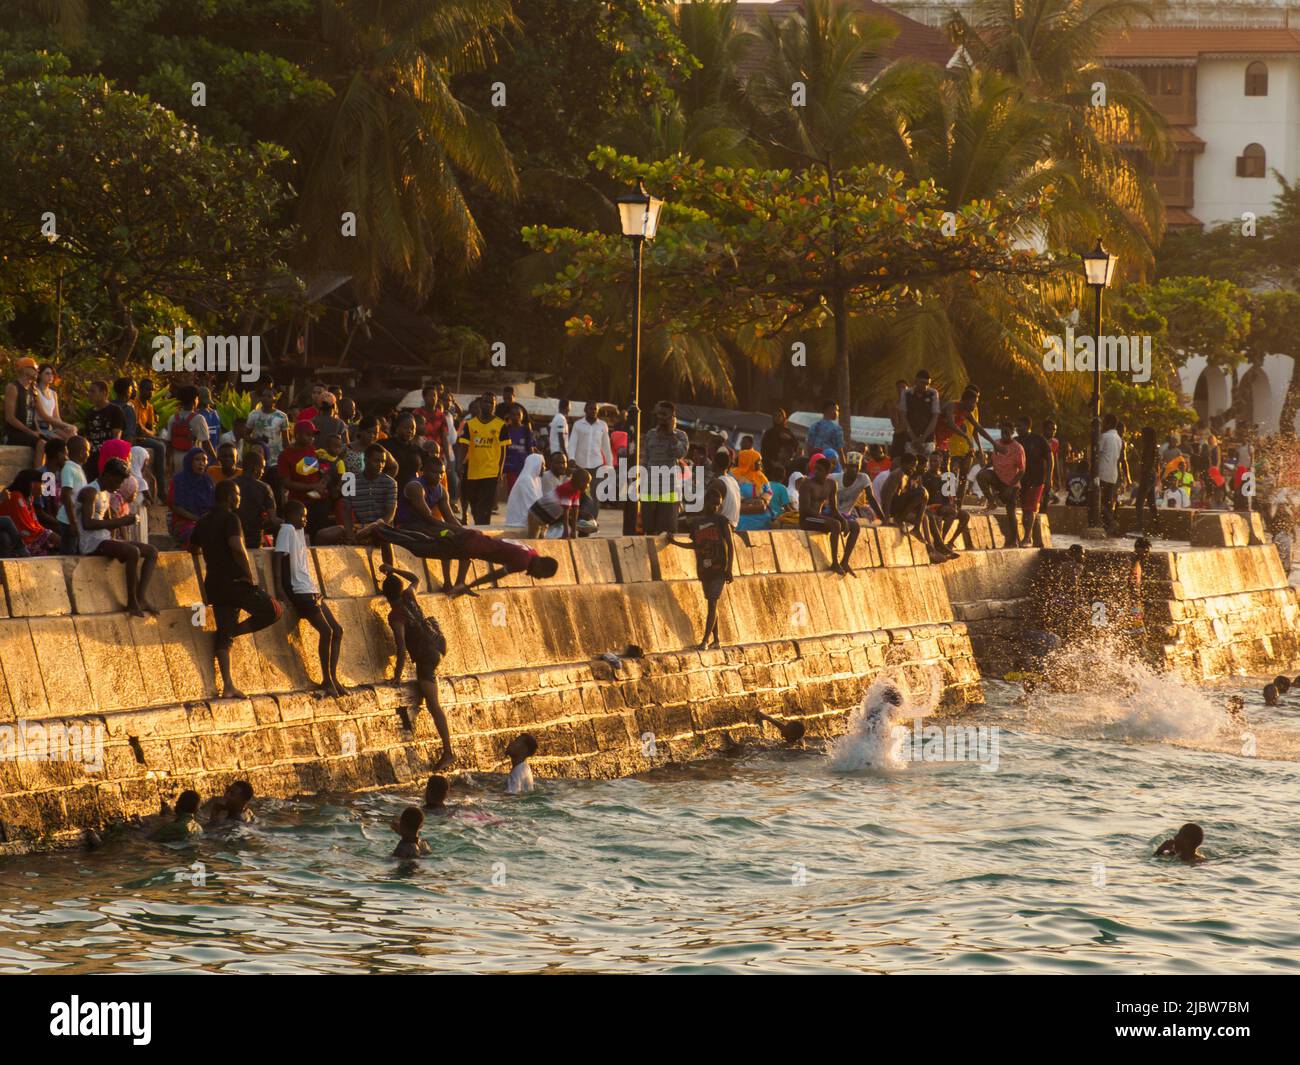 Ville de pierre, Zanzibar, Tanzanie - Jan 2021: Foule des gens sur les jardins de Forodhani et les enfants sautant dans l'eau d'un mur pendant l'heure du coucher du soleil. C Banque D'Images